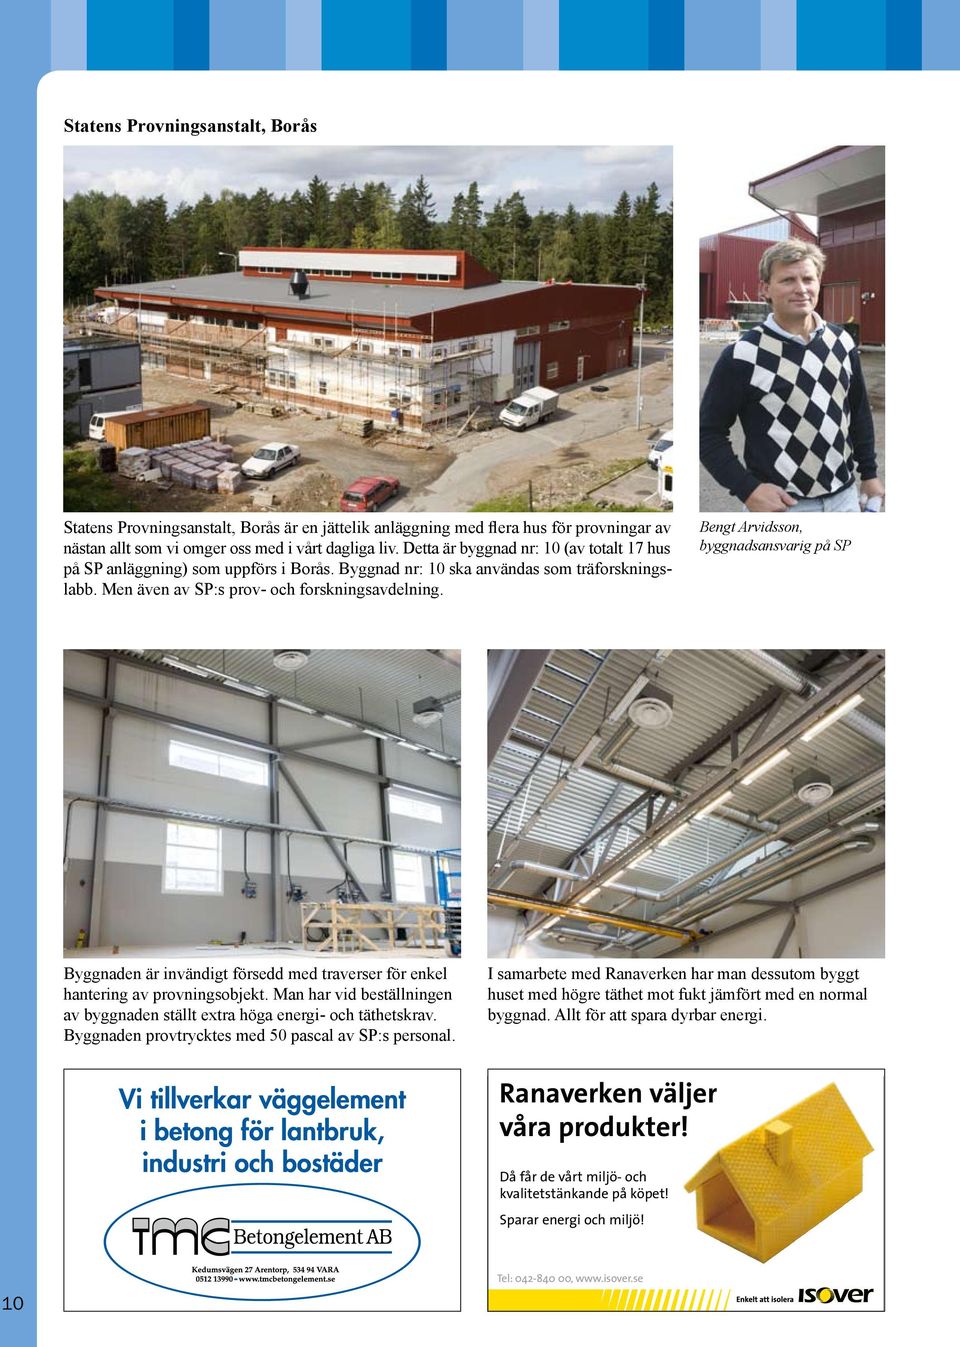 Bengt Arvidsson, byggnadsansvarig på SP Byggnaden är invändigt försedd med traverser för enkel hantering av provningsobjekt.